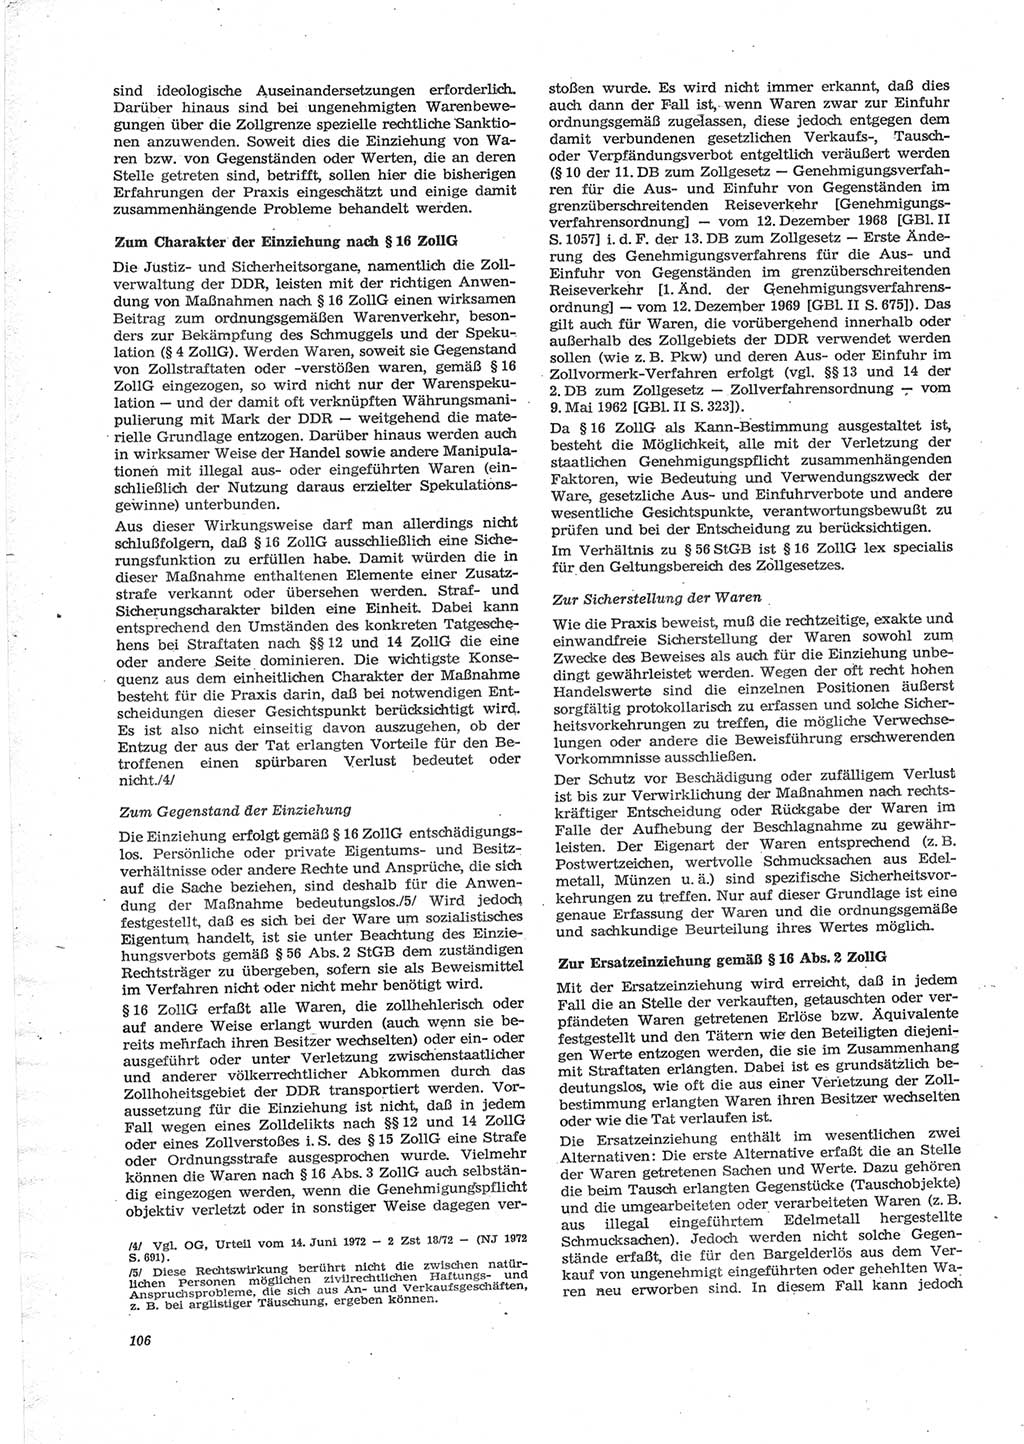 Neue Justiz (NJ), Zeitschrift für Recht und Rechtswissenschaft [Deutsche Demokratische Republik (DDR)], 28. Jahrgang 1974, Seite 106 (NJ DDR 1974, S. 106)